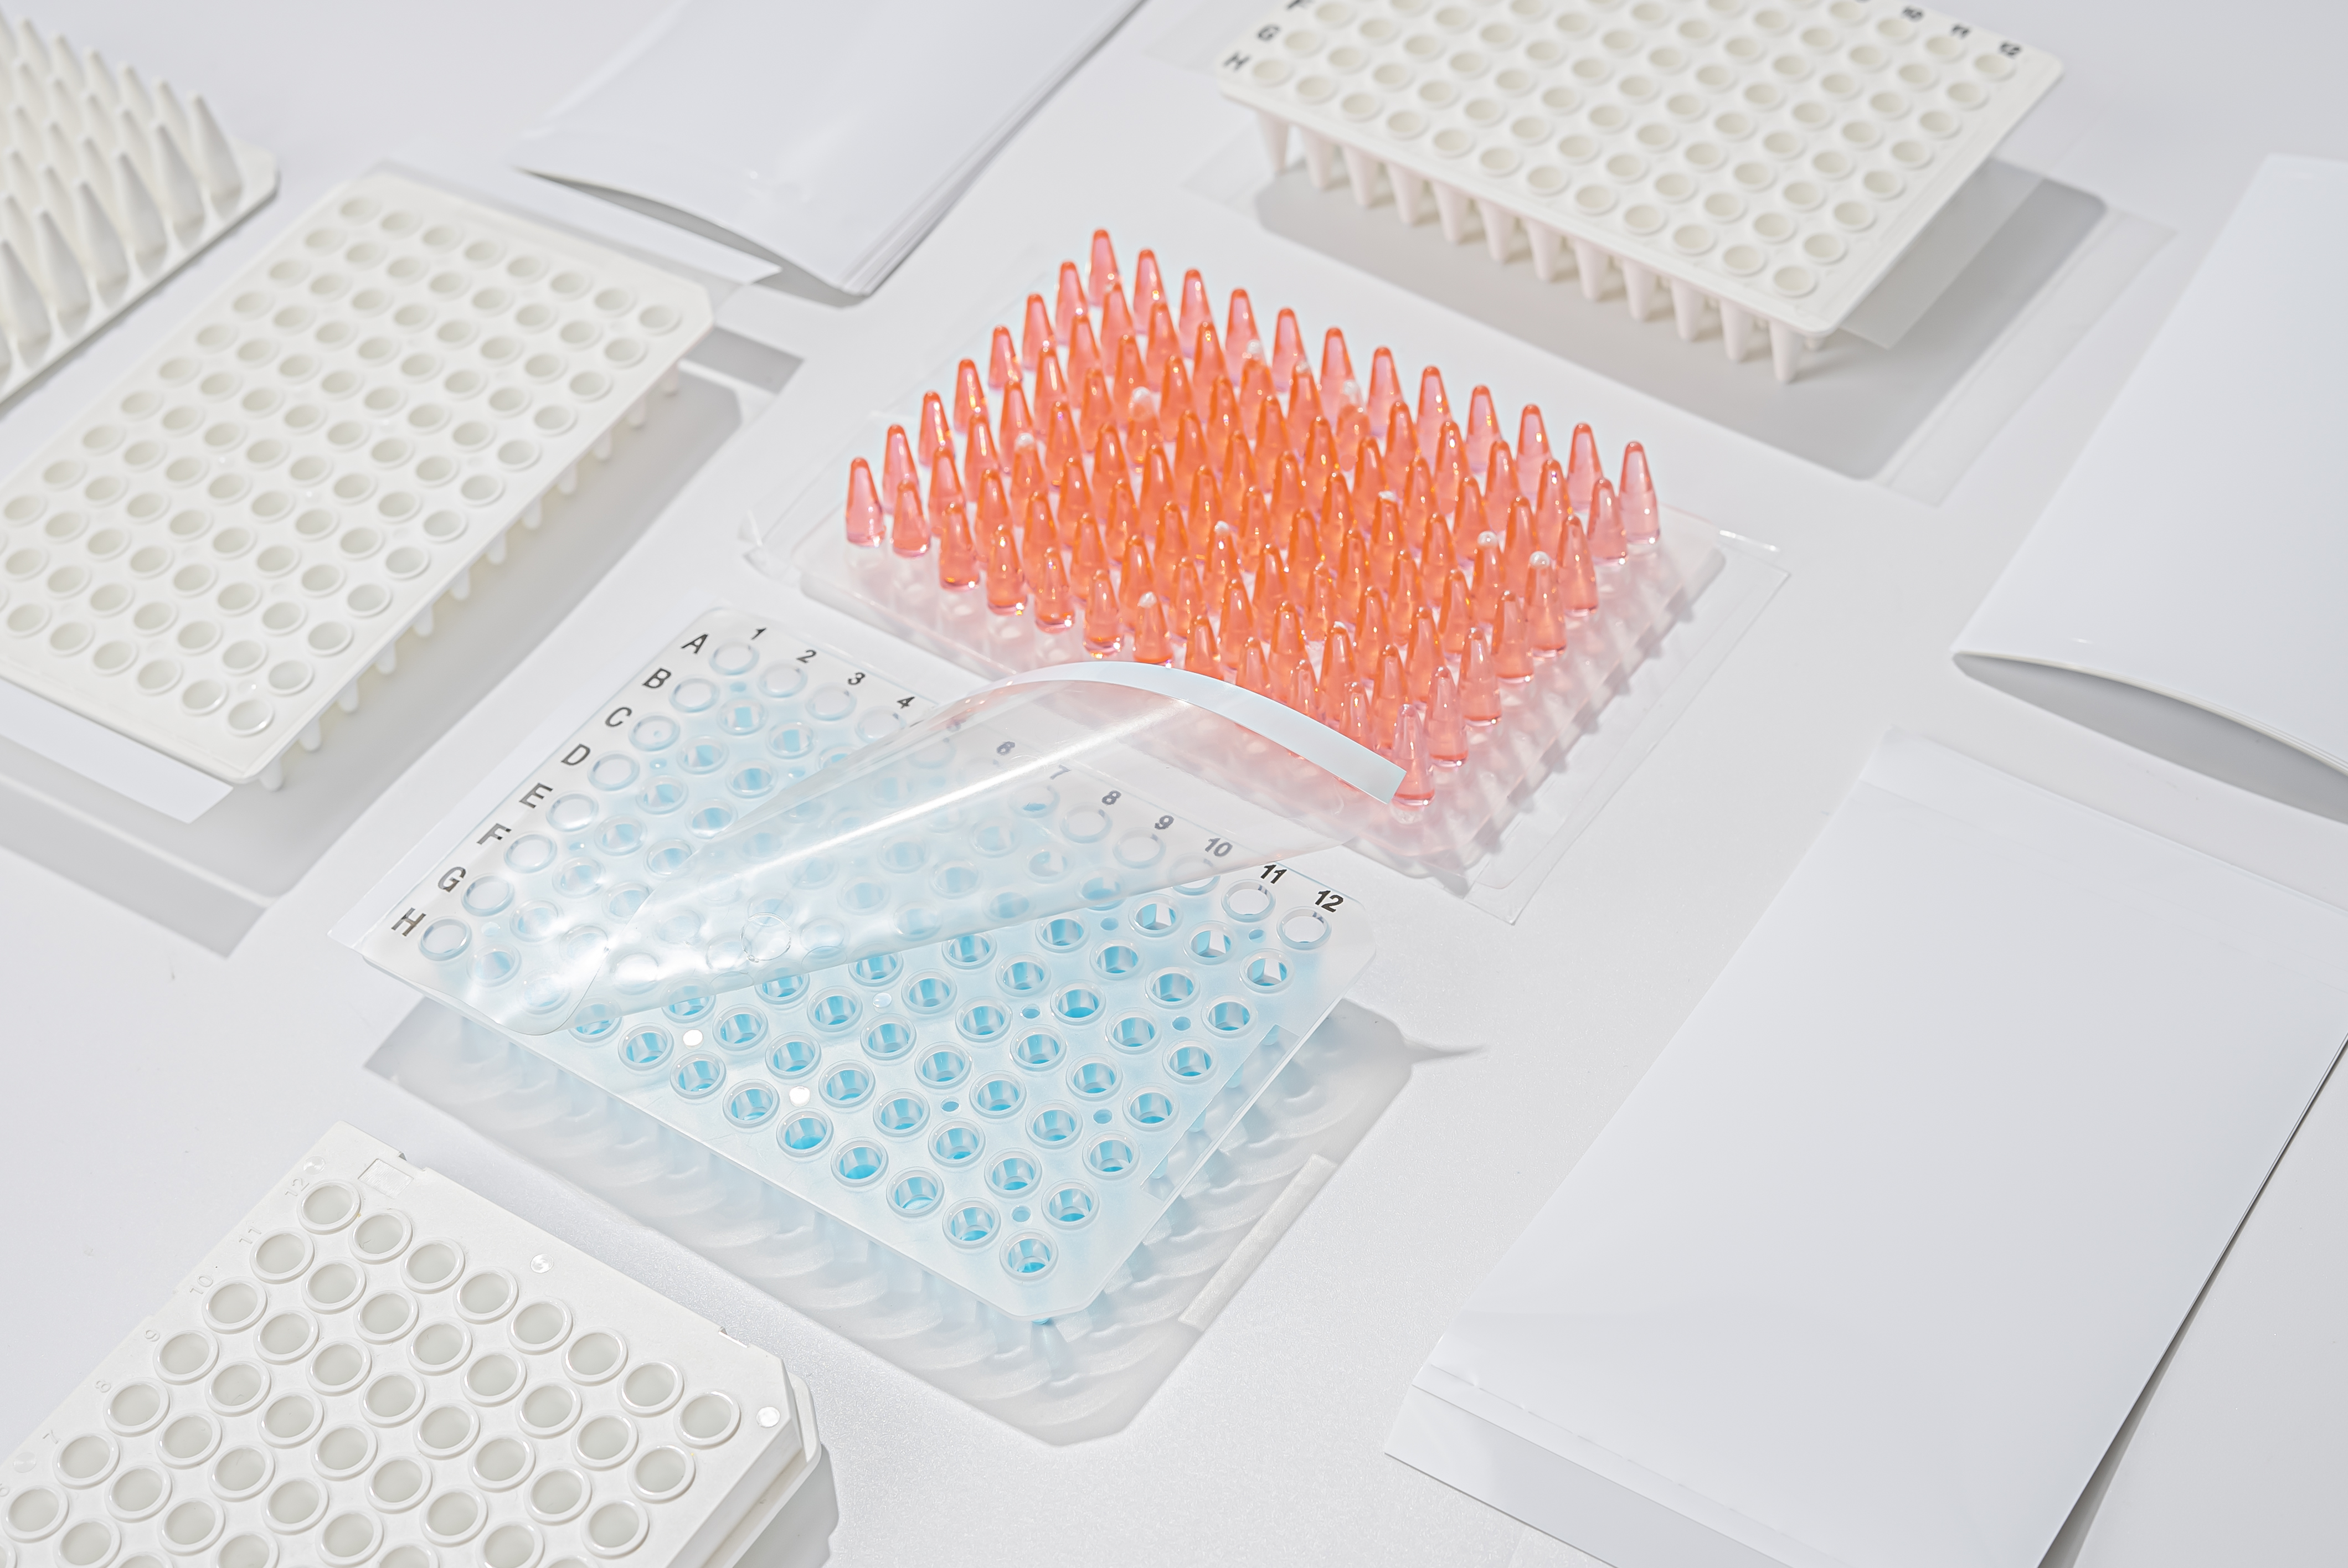 Enkle tips til, hvordan du holder dig væk fra kontaminering under PCR